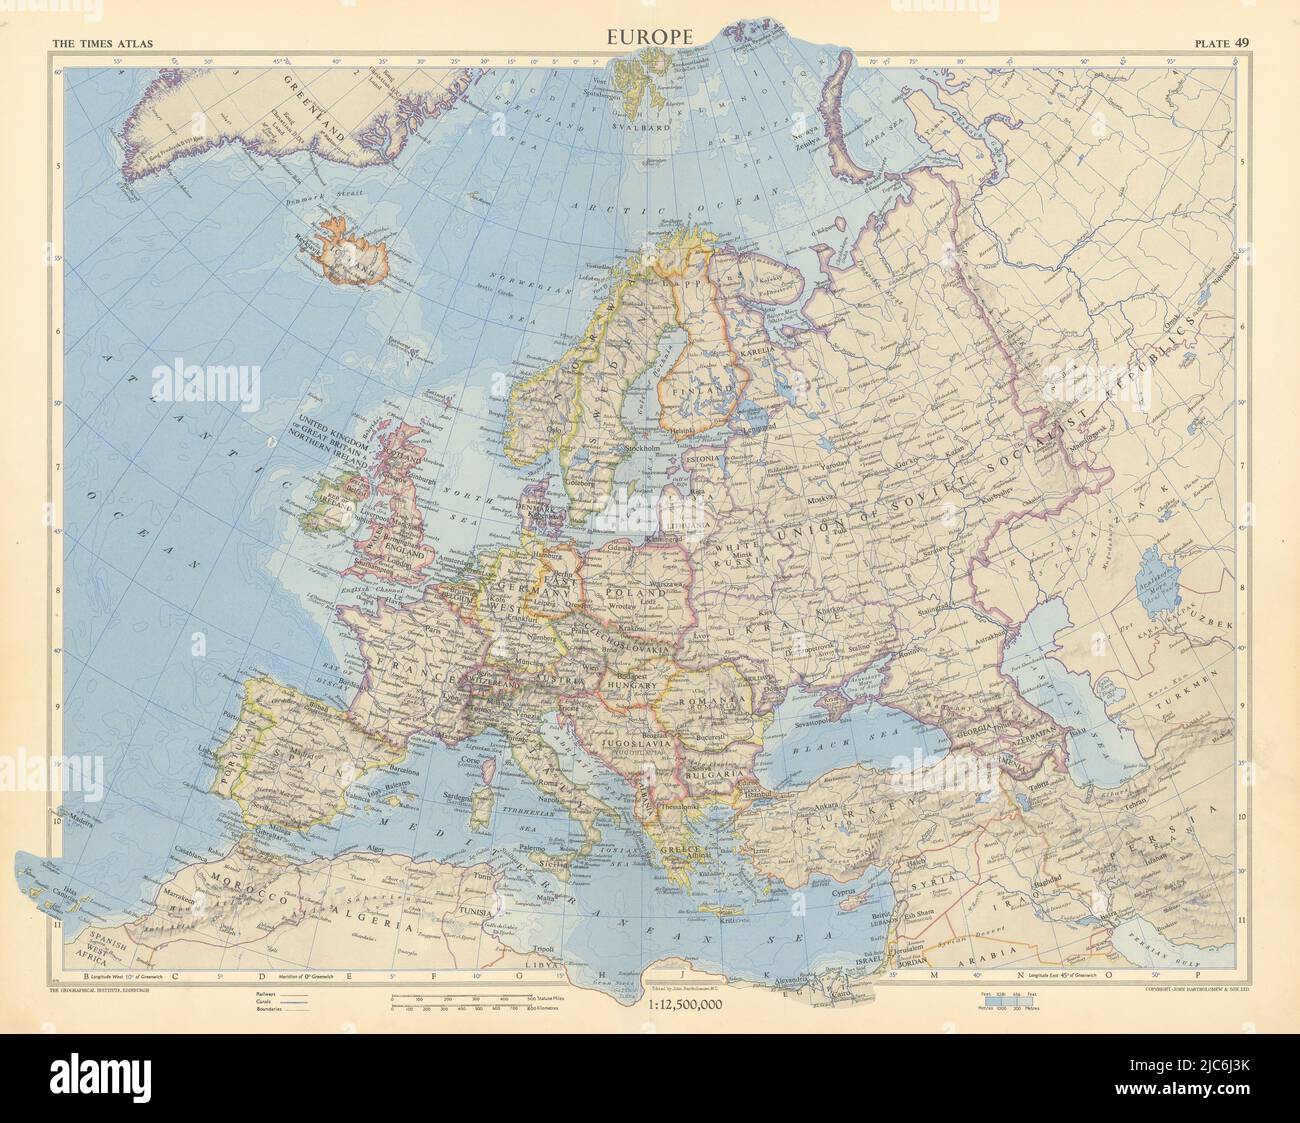 Europa des Kalten Krieges. UdSSR West- und Ostdeutschland Jugoslawien. TIMES 1955 Karte Stockfoto